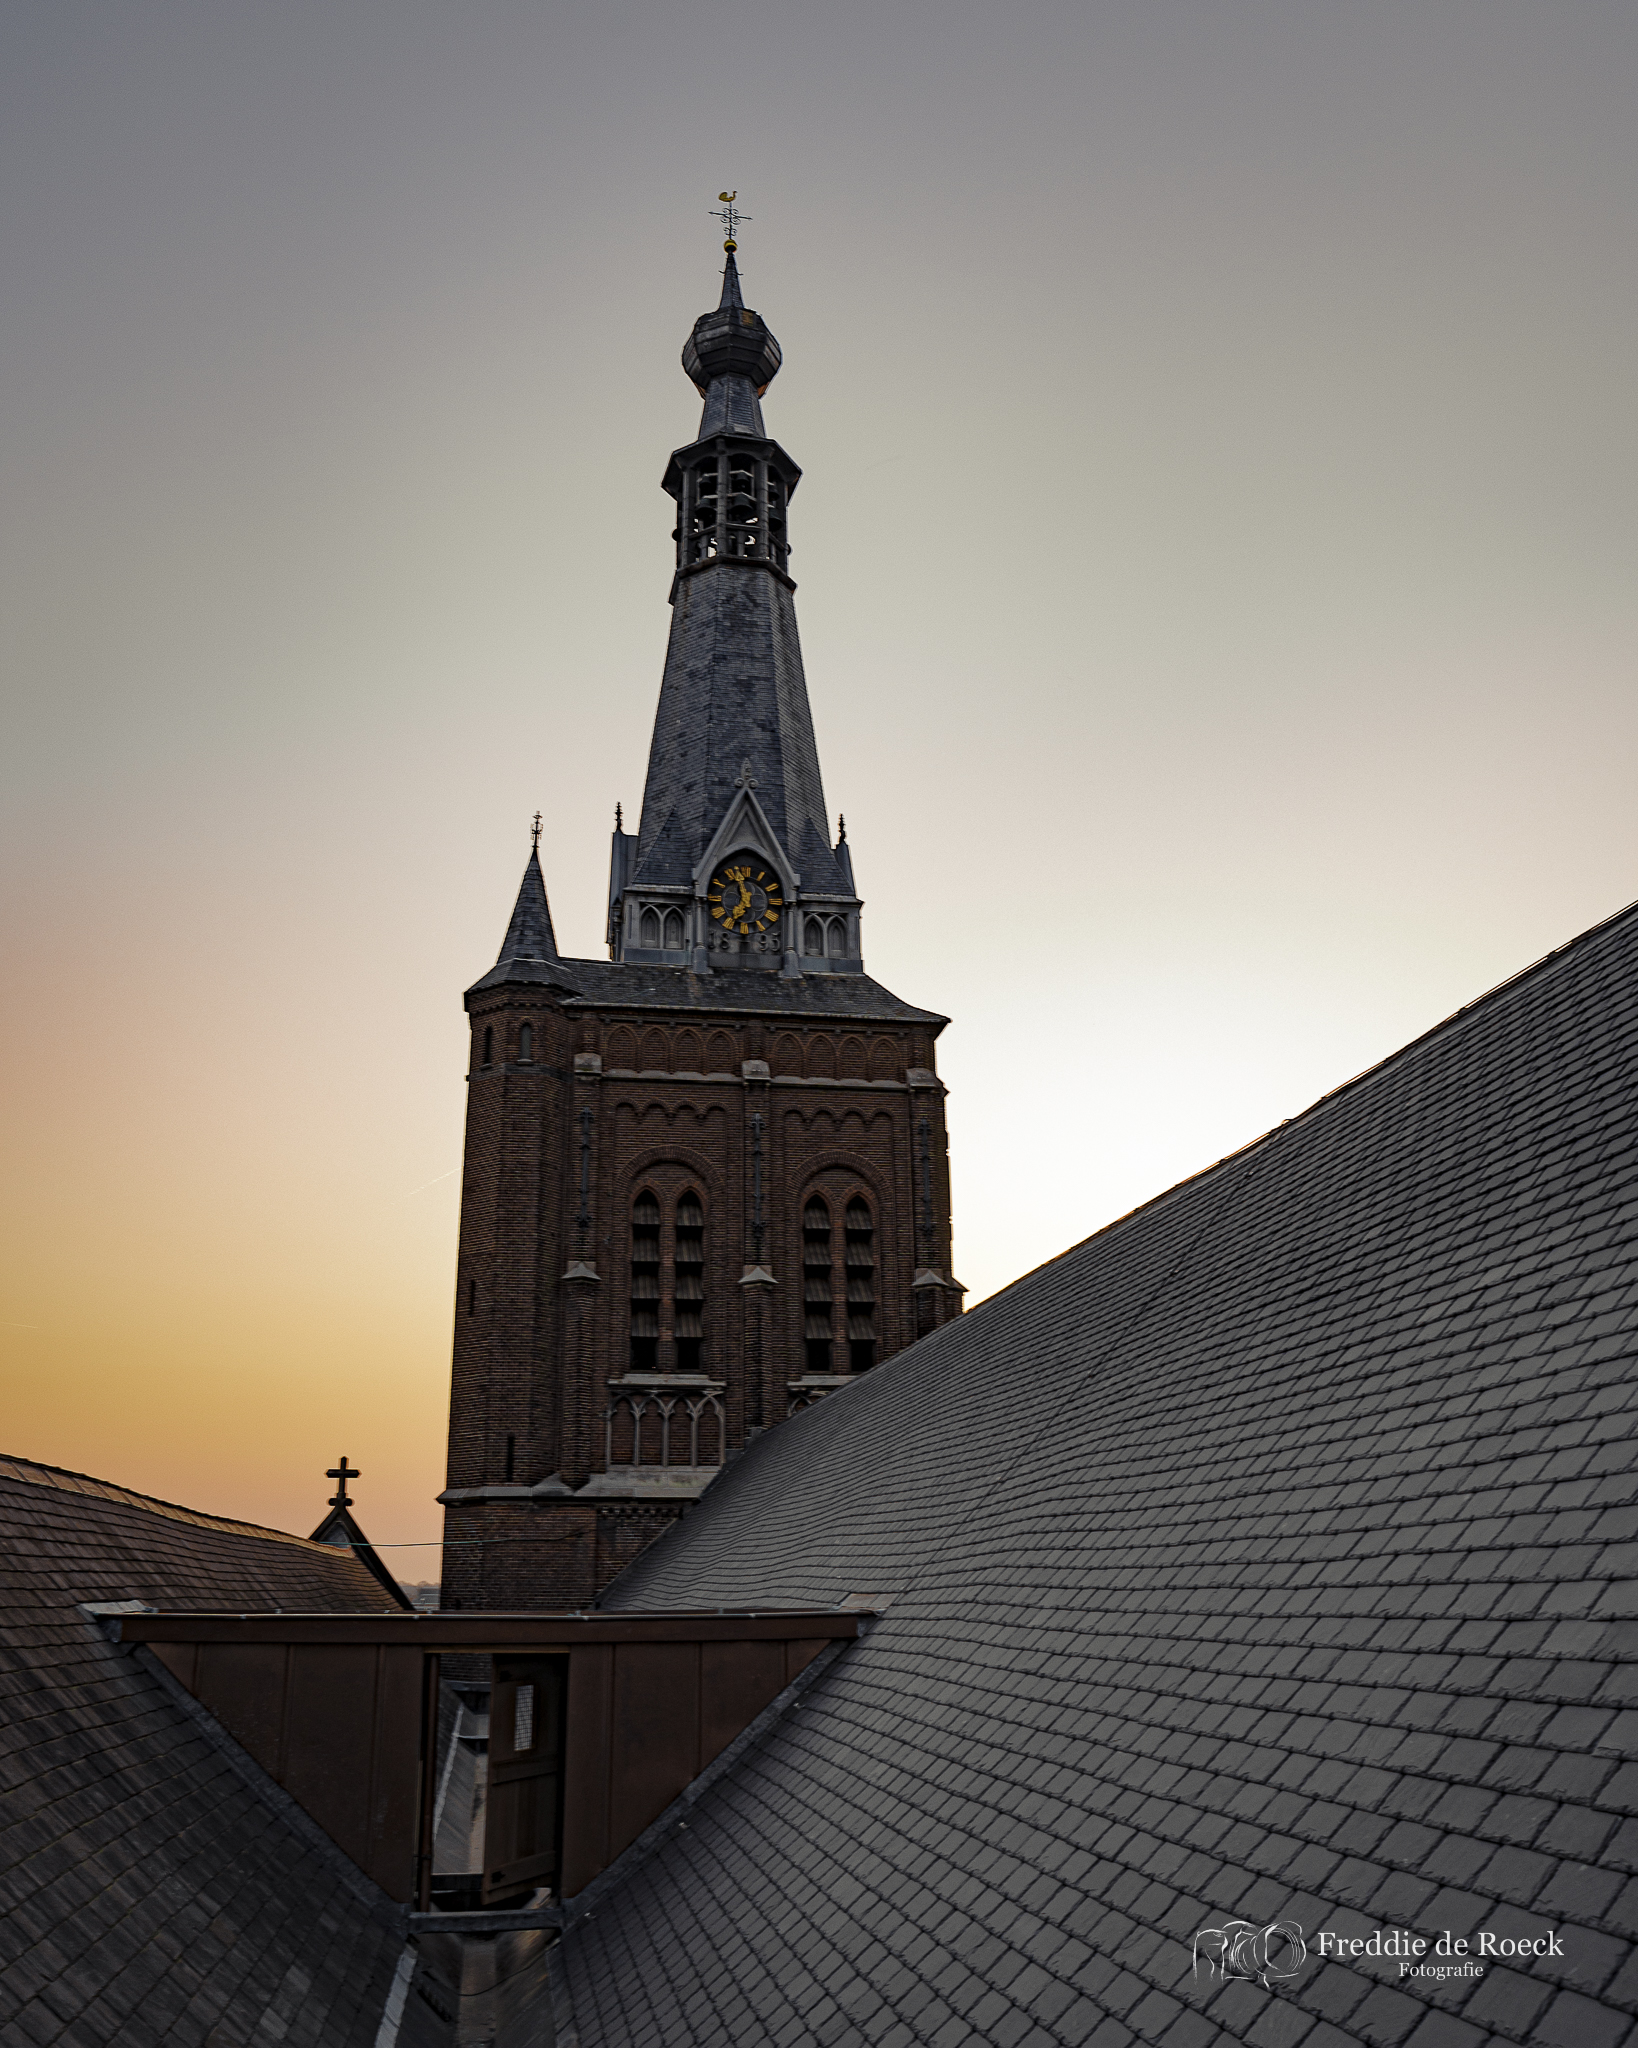 Heikese kerk _ Skyline van Tilburg  _  Foto _ Freddie de Roeck  _  26 maart 2022 _  -25jpg